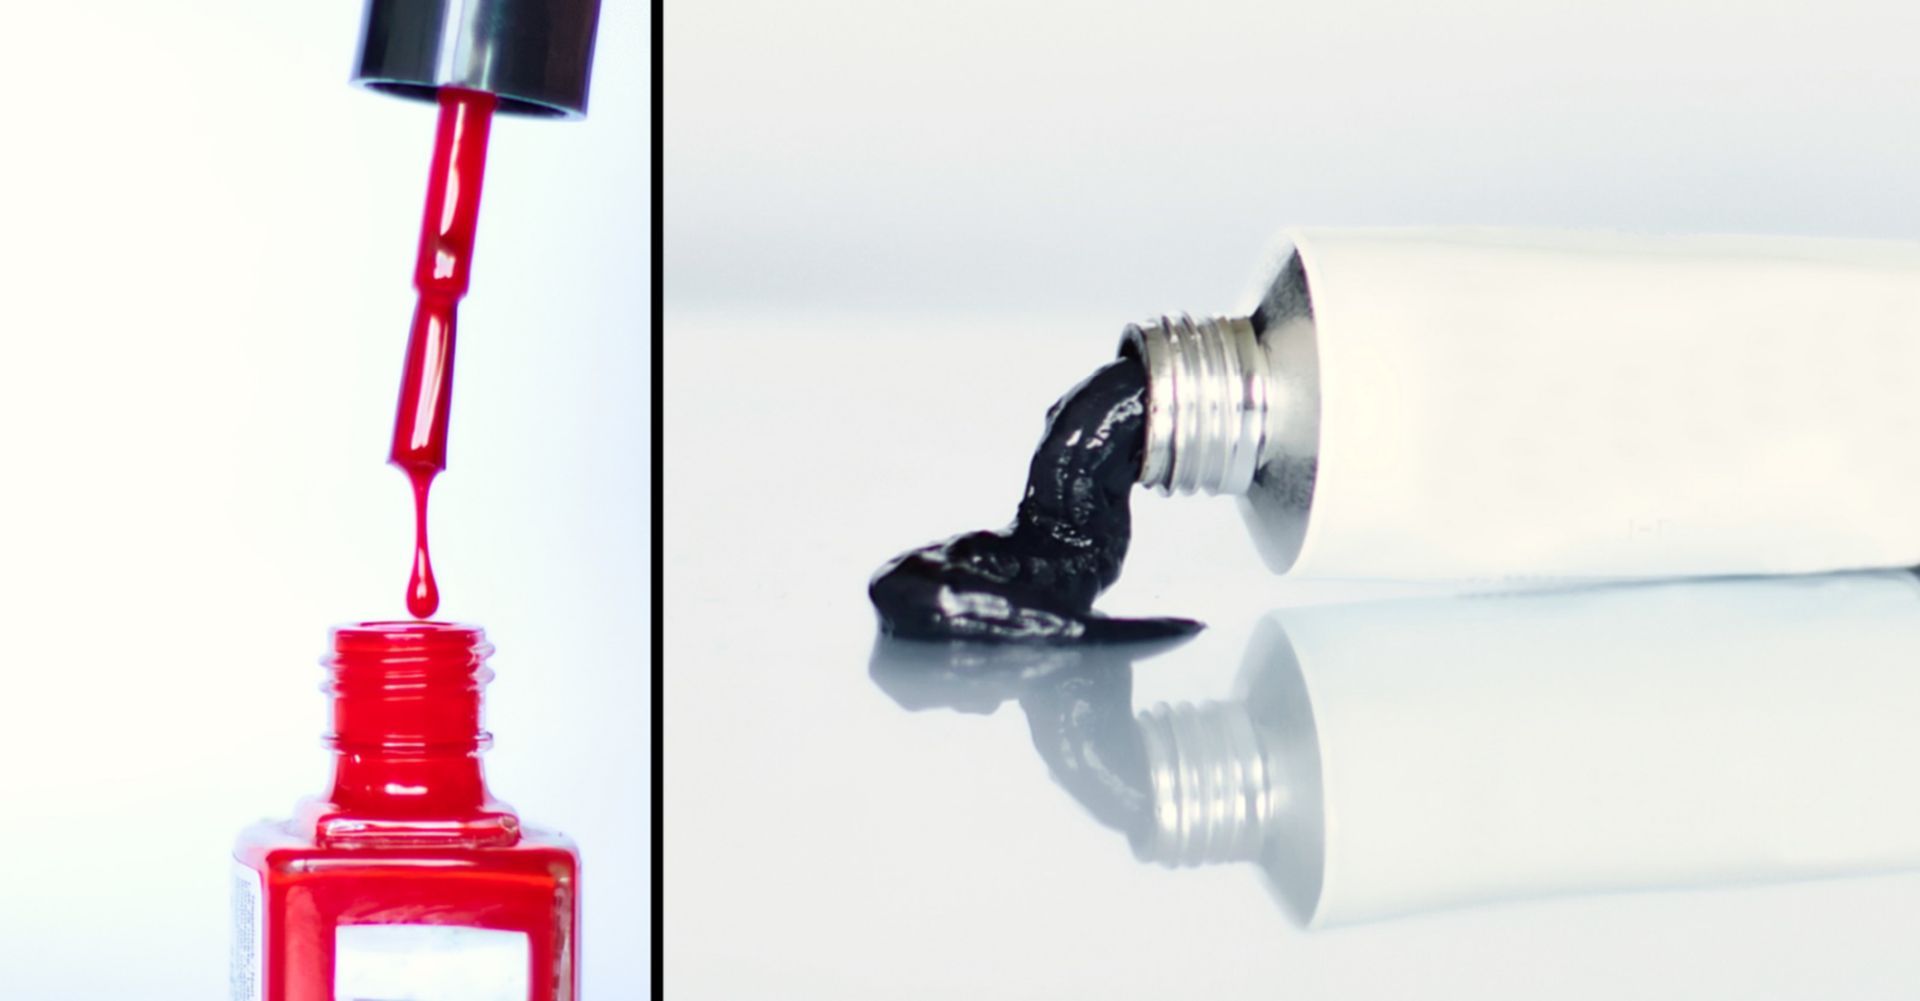 Das Bild zeigt einen roten Nagellack, bei dem ein Tropfen vom Pinsel in das Fläschen fällt sowie eine Tube mit schwarzer Wimpernfarbe, aus der etwas Produkt herausgedrückt wurde